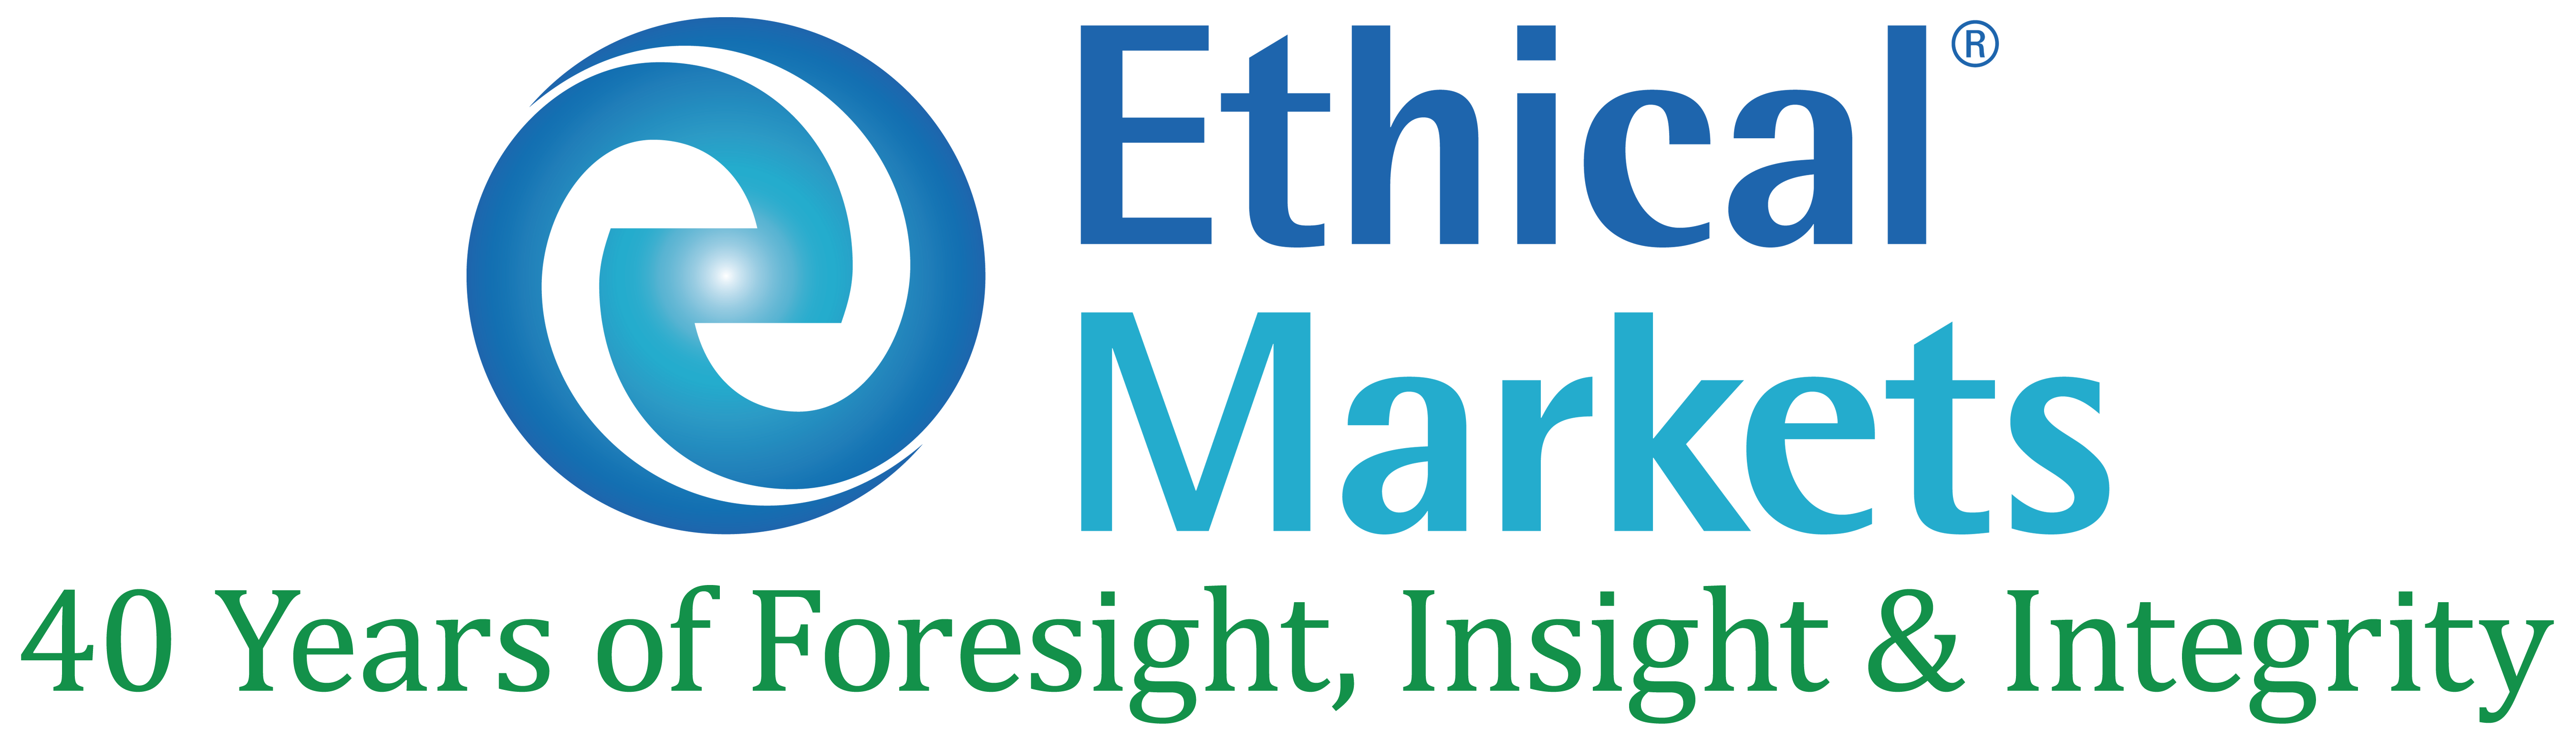 EthicalMarketsMedia